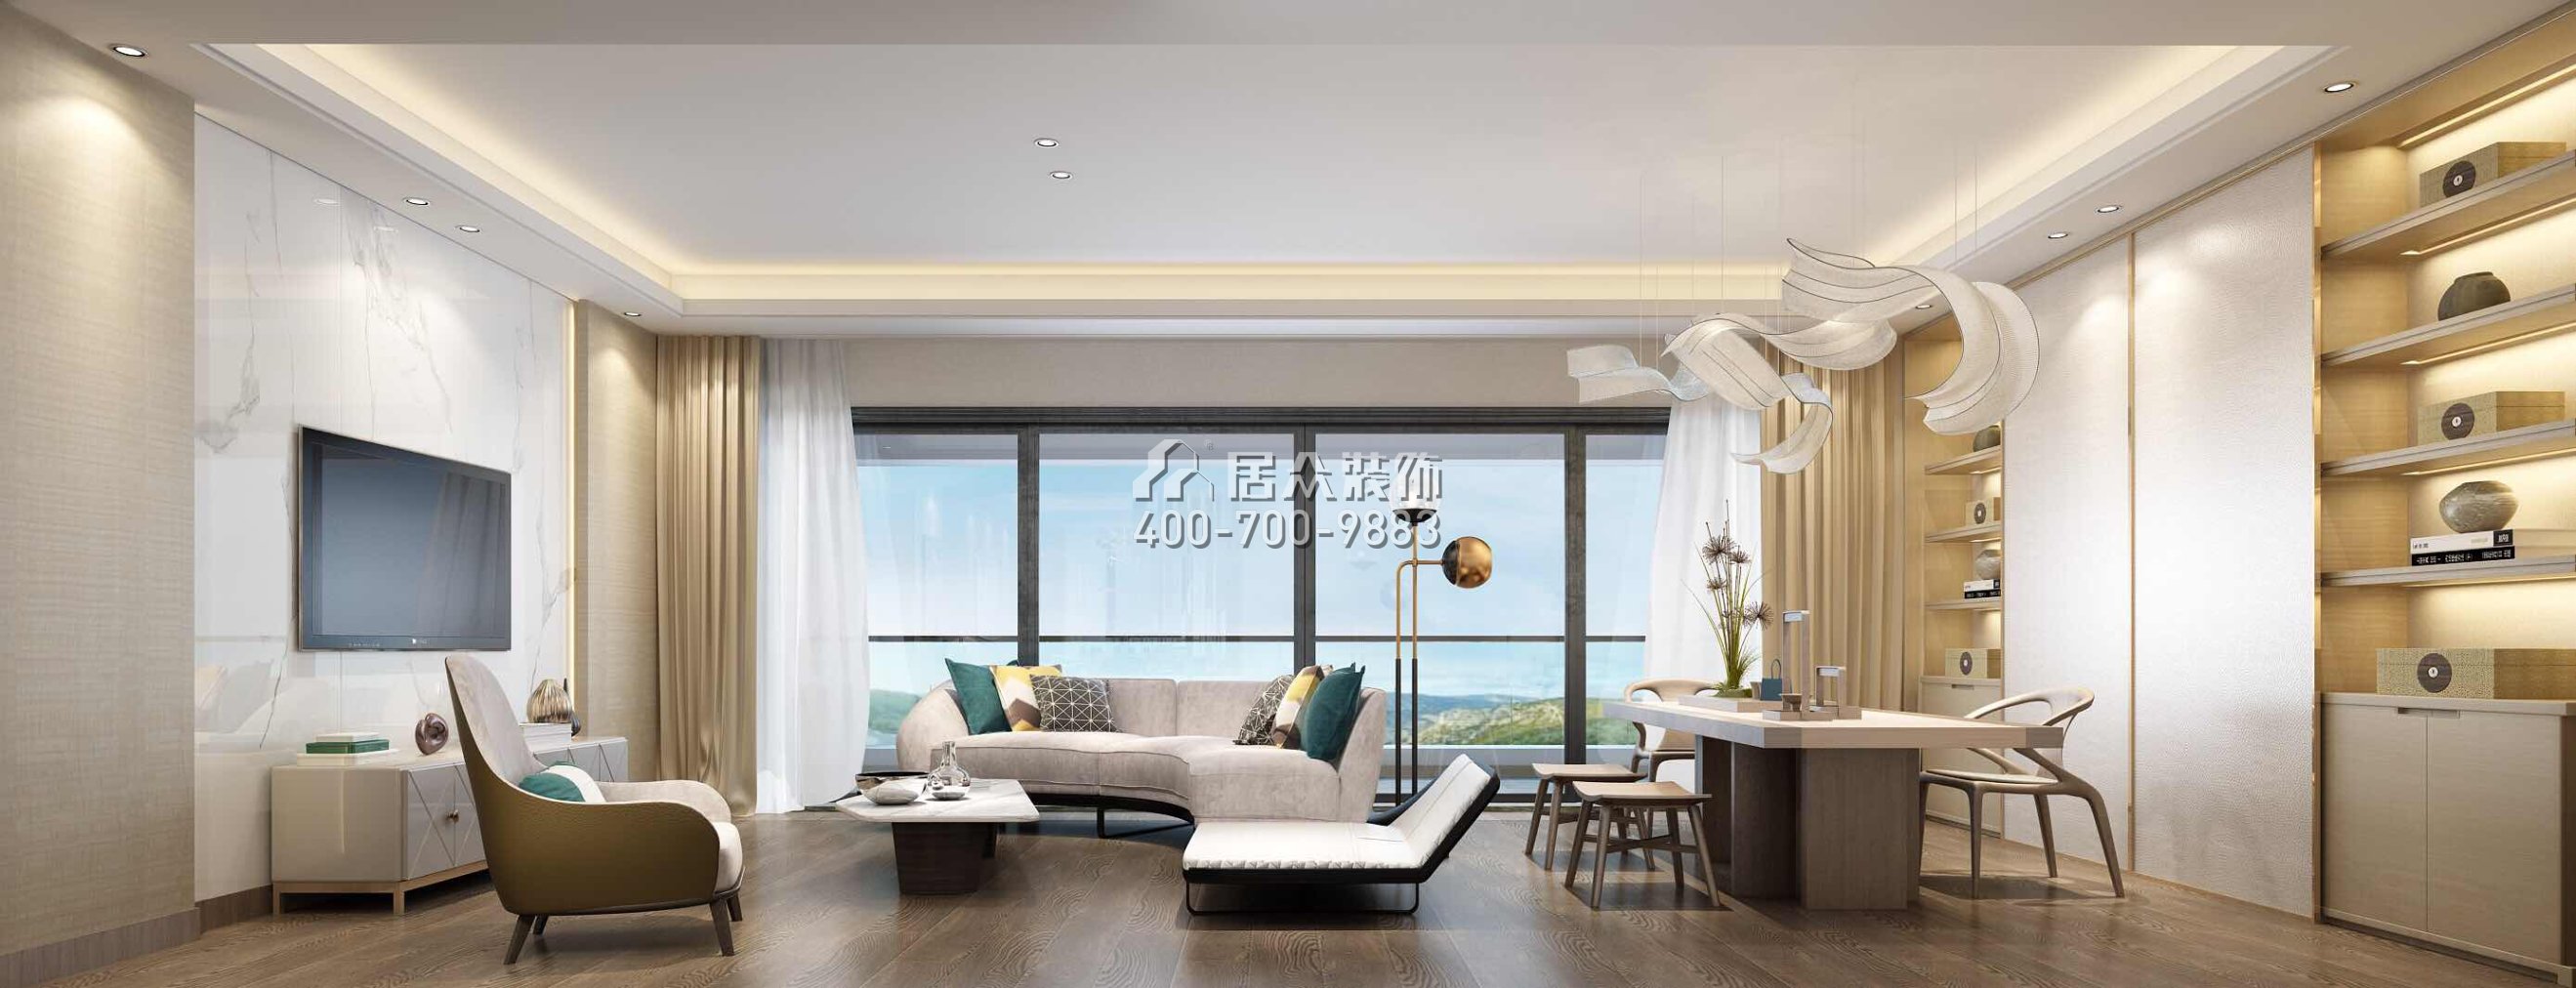 银湖蓝山230平方米现代简约风格平层户型客厅装修效果图